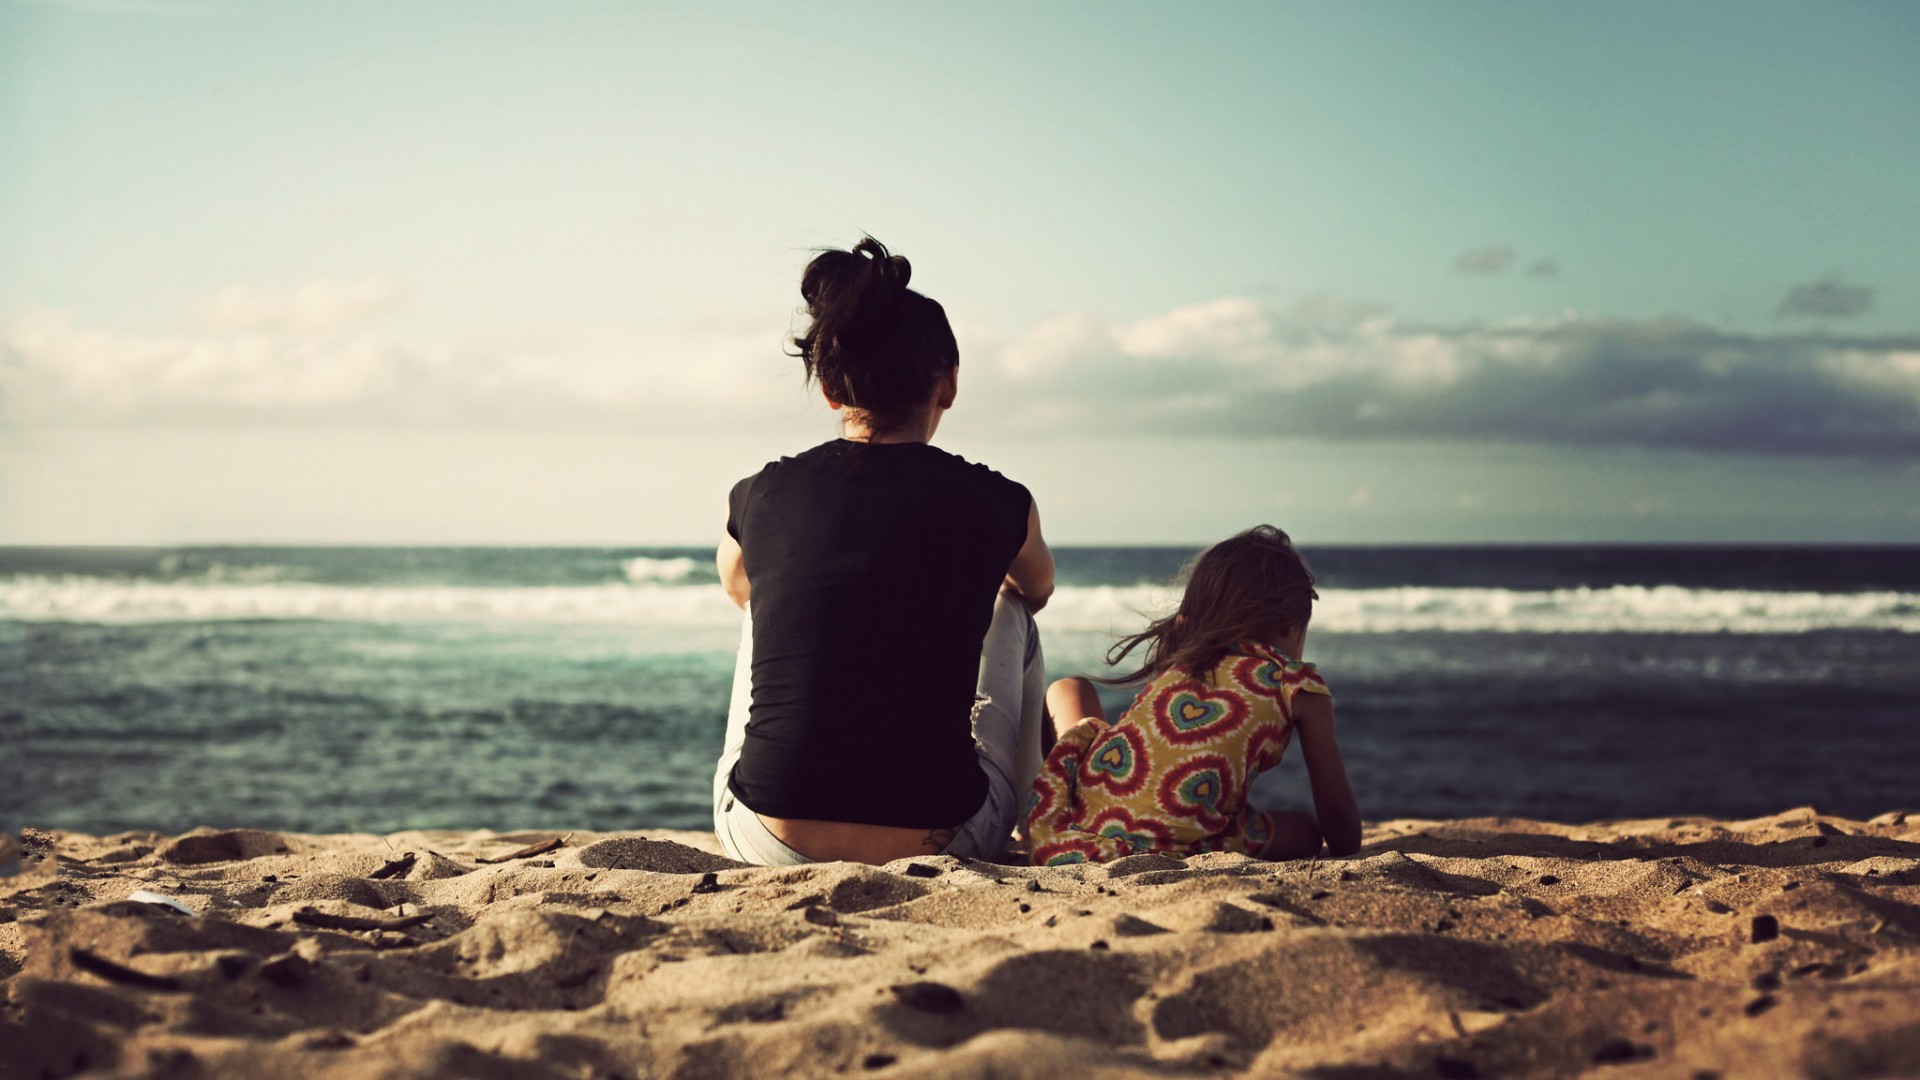 女孩,大海,坐在沙滩上,背影,唯美,风景壁纸